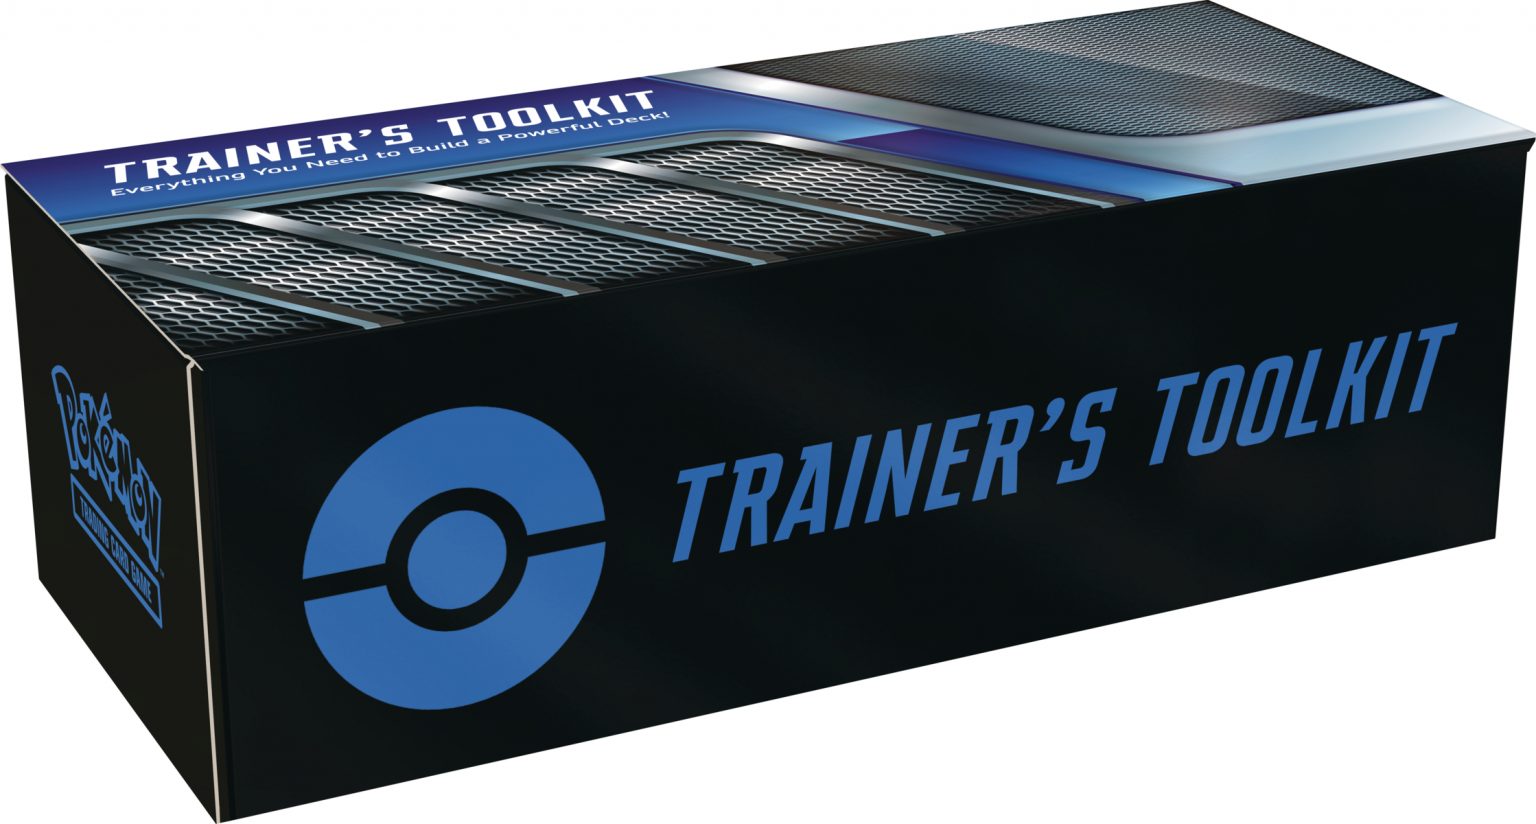 Trainer's Toolkit arriva la nuova edizione con Crobat V Pokémon